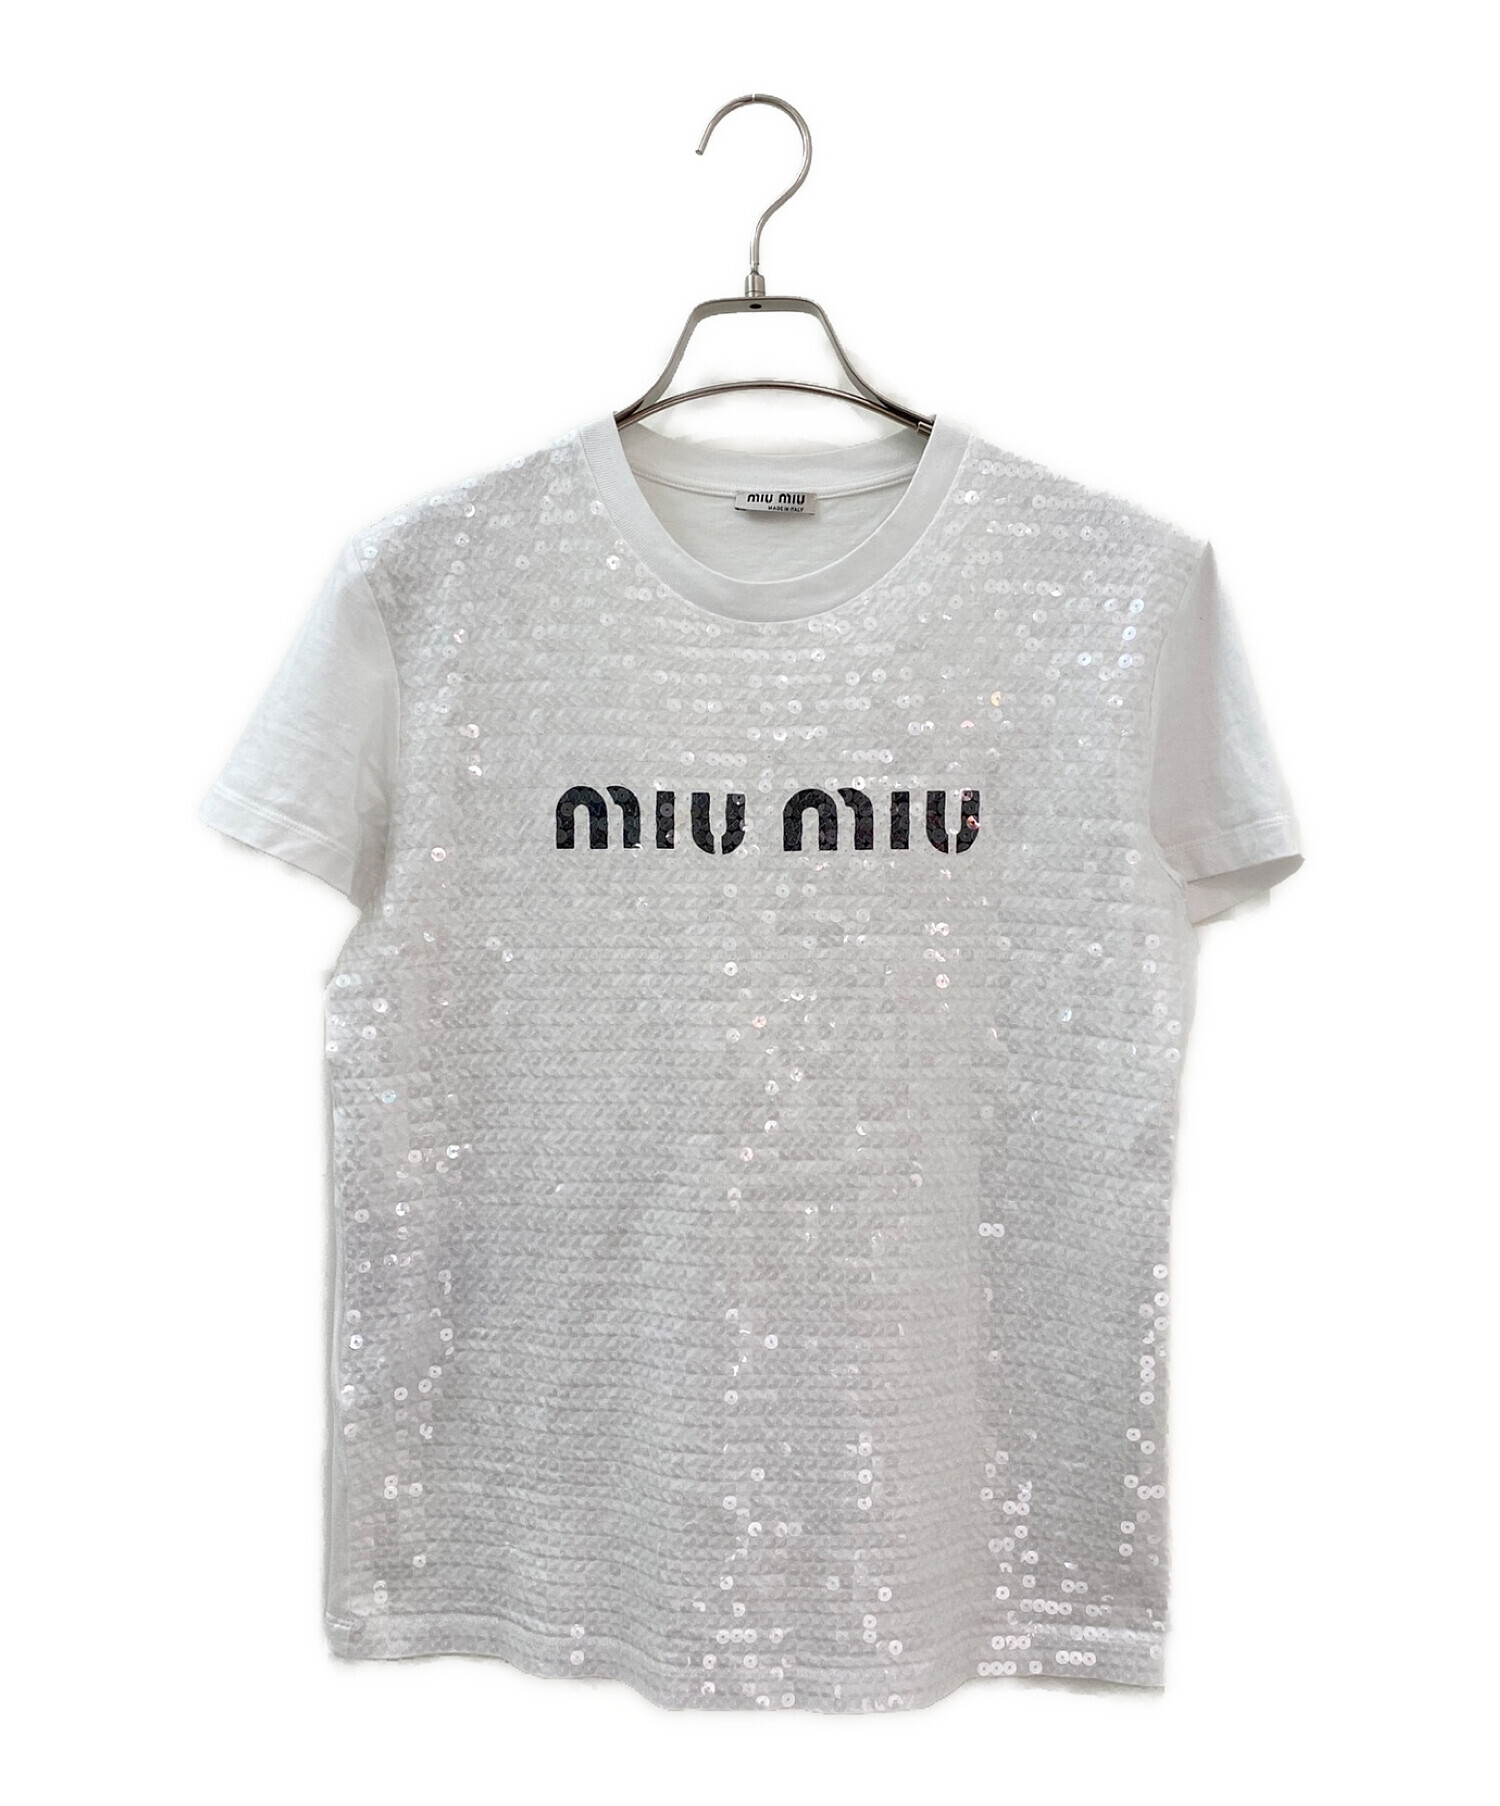 MIU MIU (ミュウミュウ) スパンコールロゴTシャツ ホワイト サイズ:XS